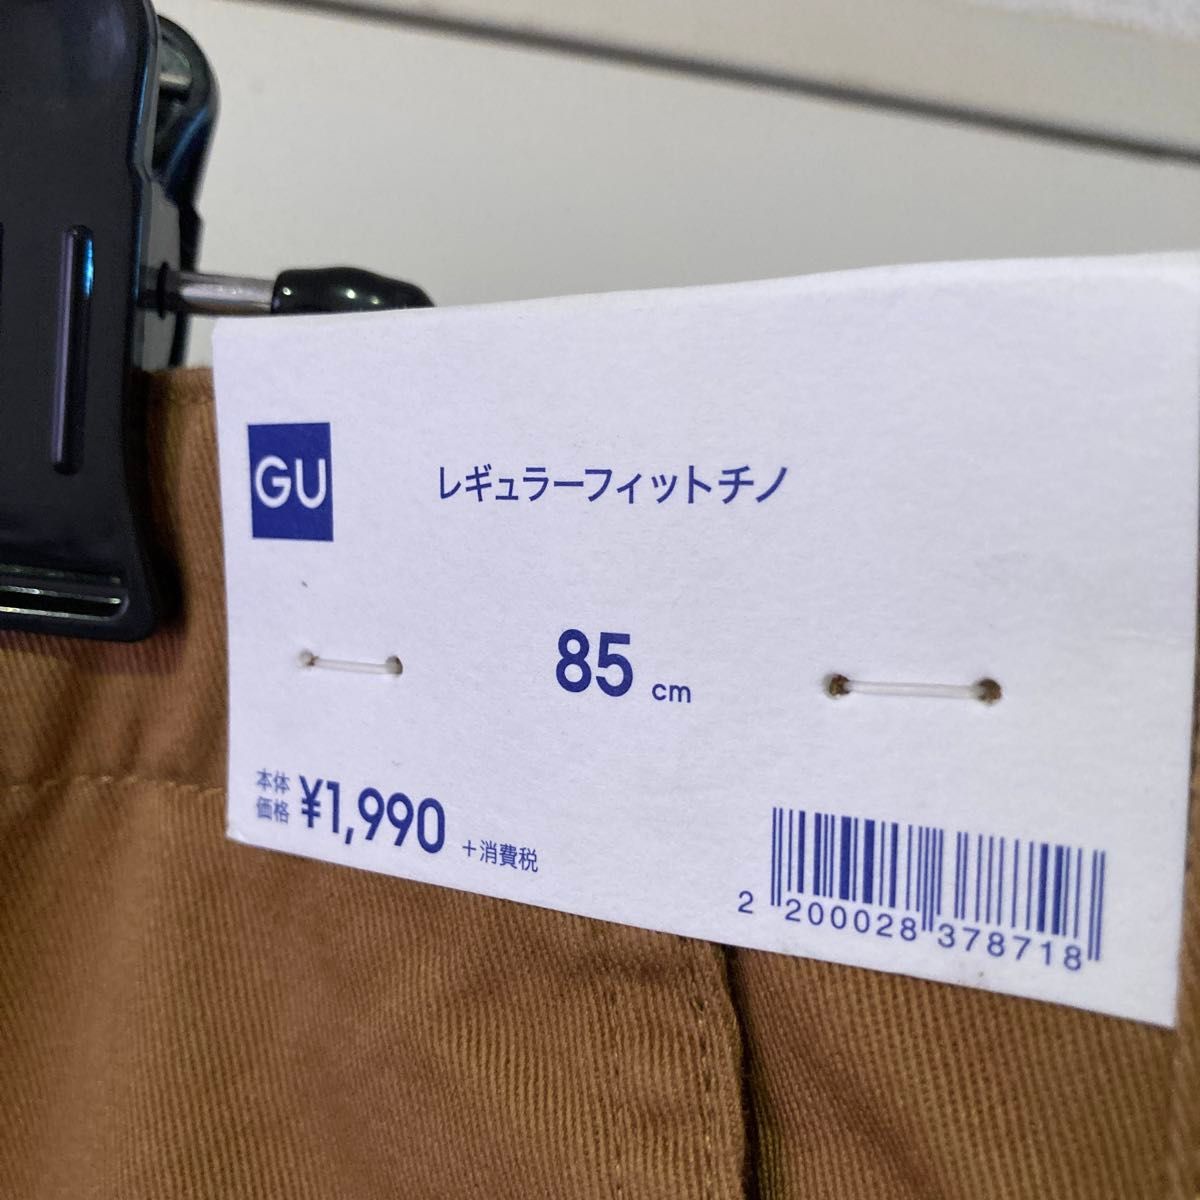 GU ジーユー レギュラーフィットチノ パンツ メンズ 85 チノパン